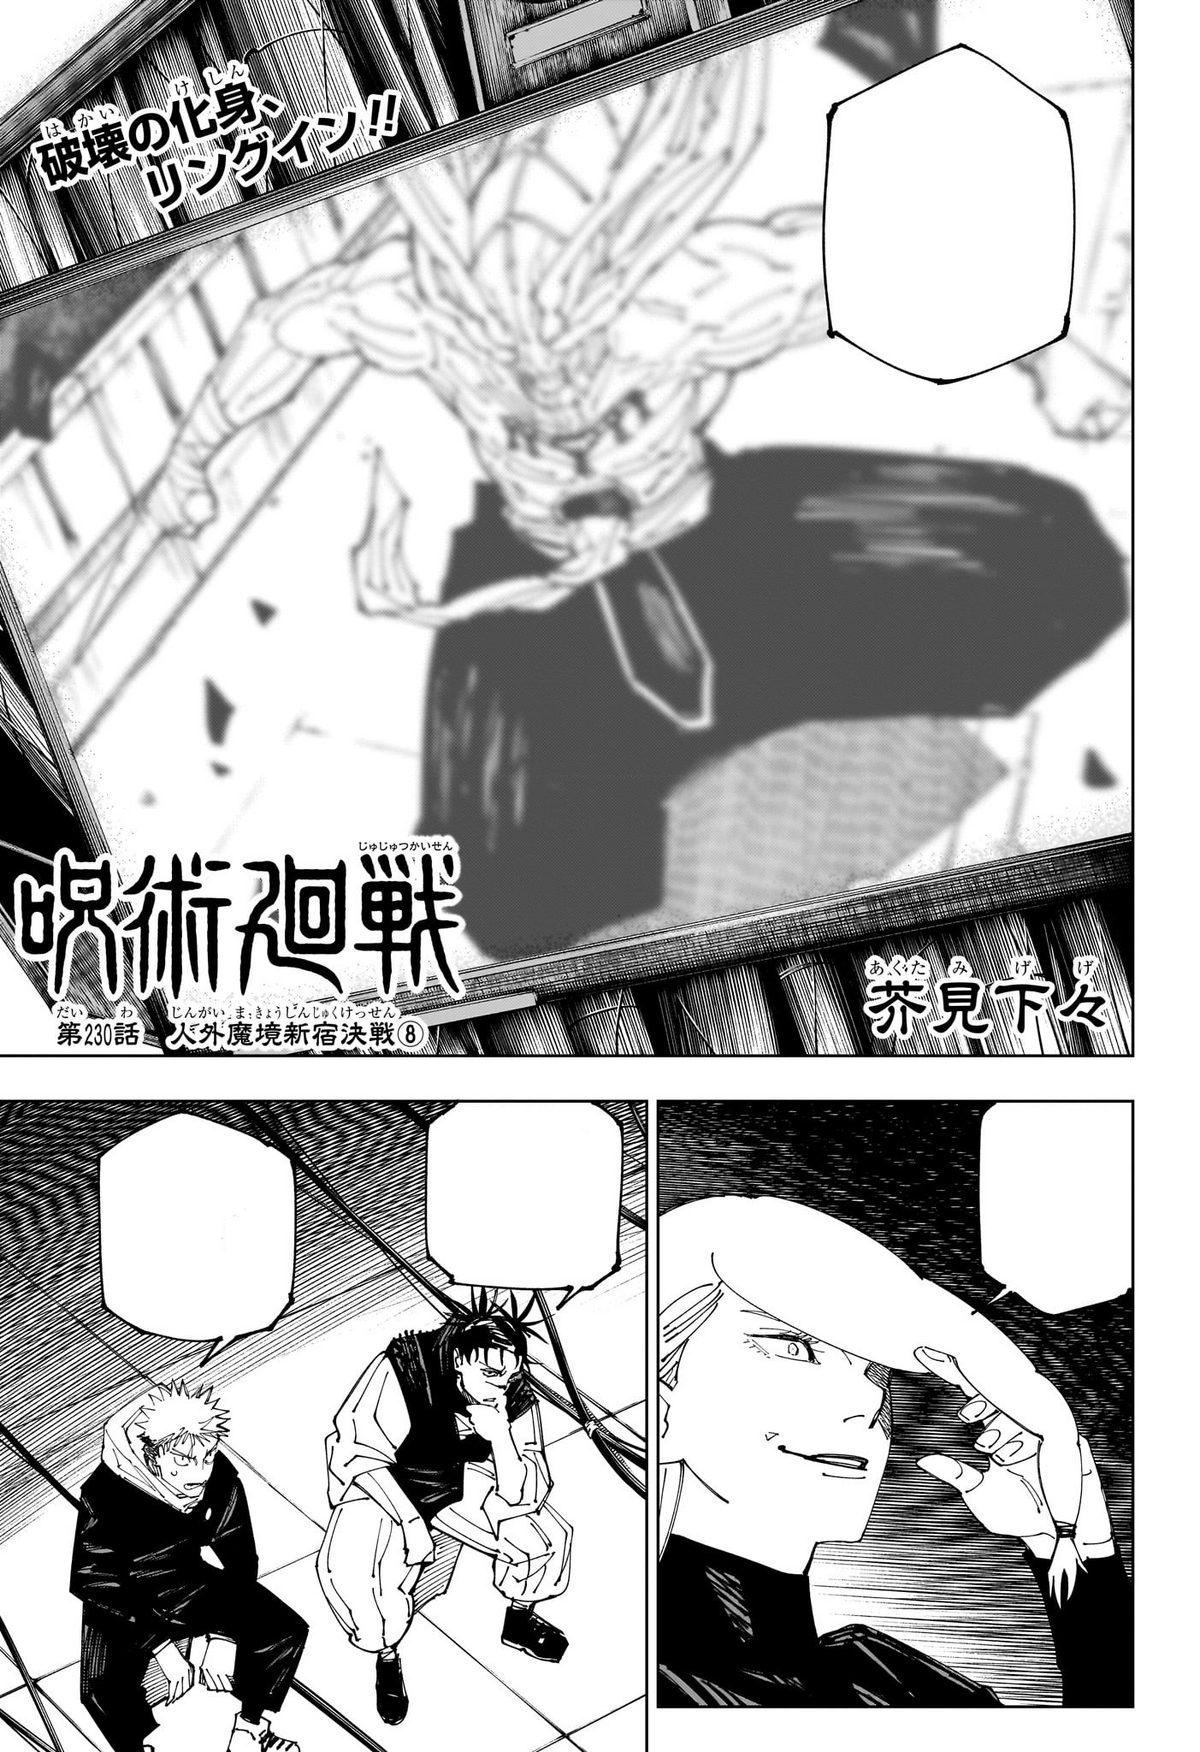 Jujutsu Kaisen Chapter 229: Inhuman Makyo Shinjuku Showdown Part 7 in 2023